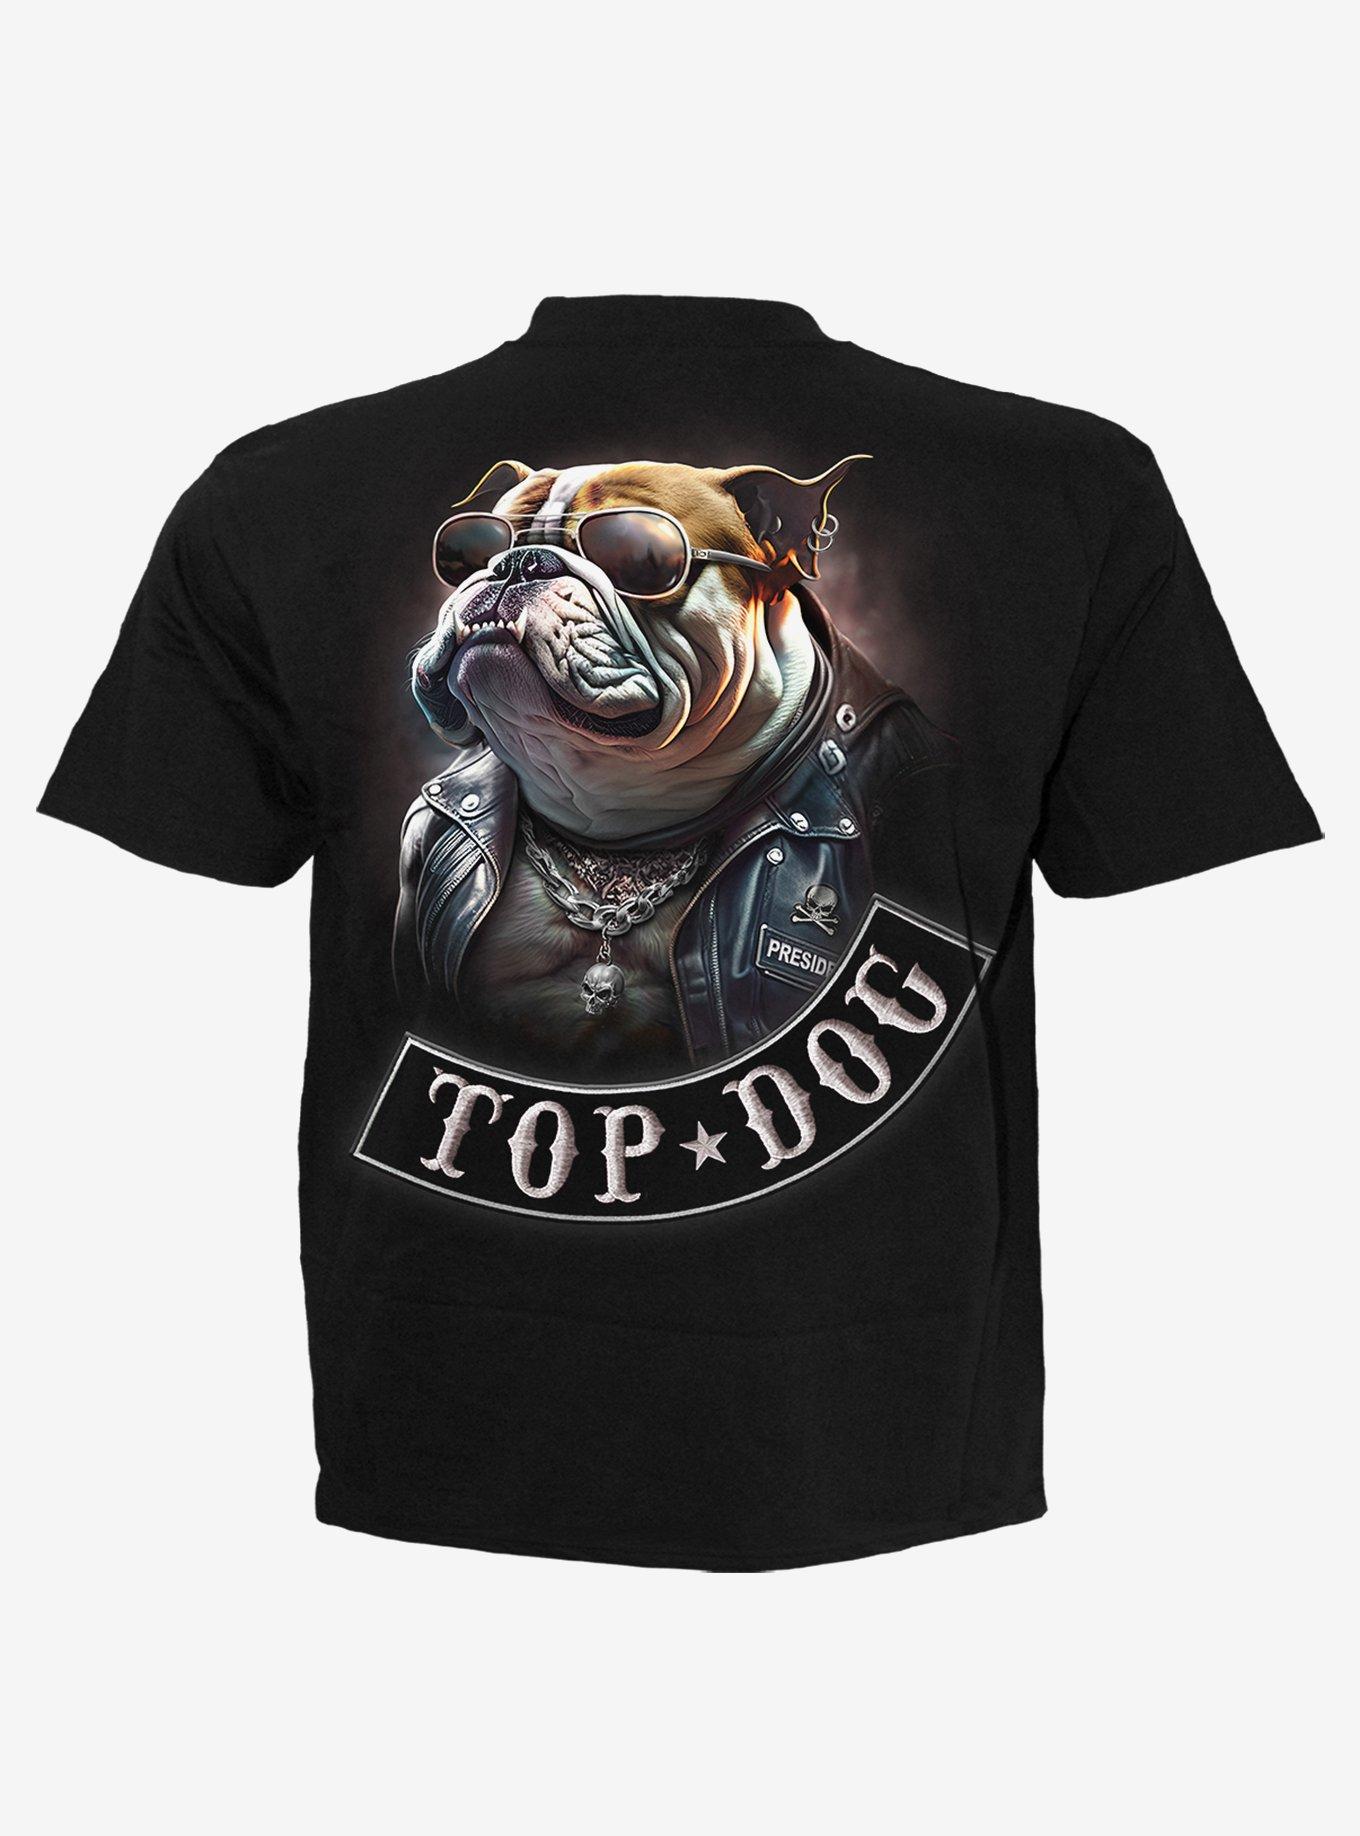 Spiral Top Dog T-Shirt Black, , hi-res